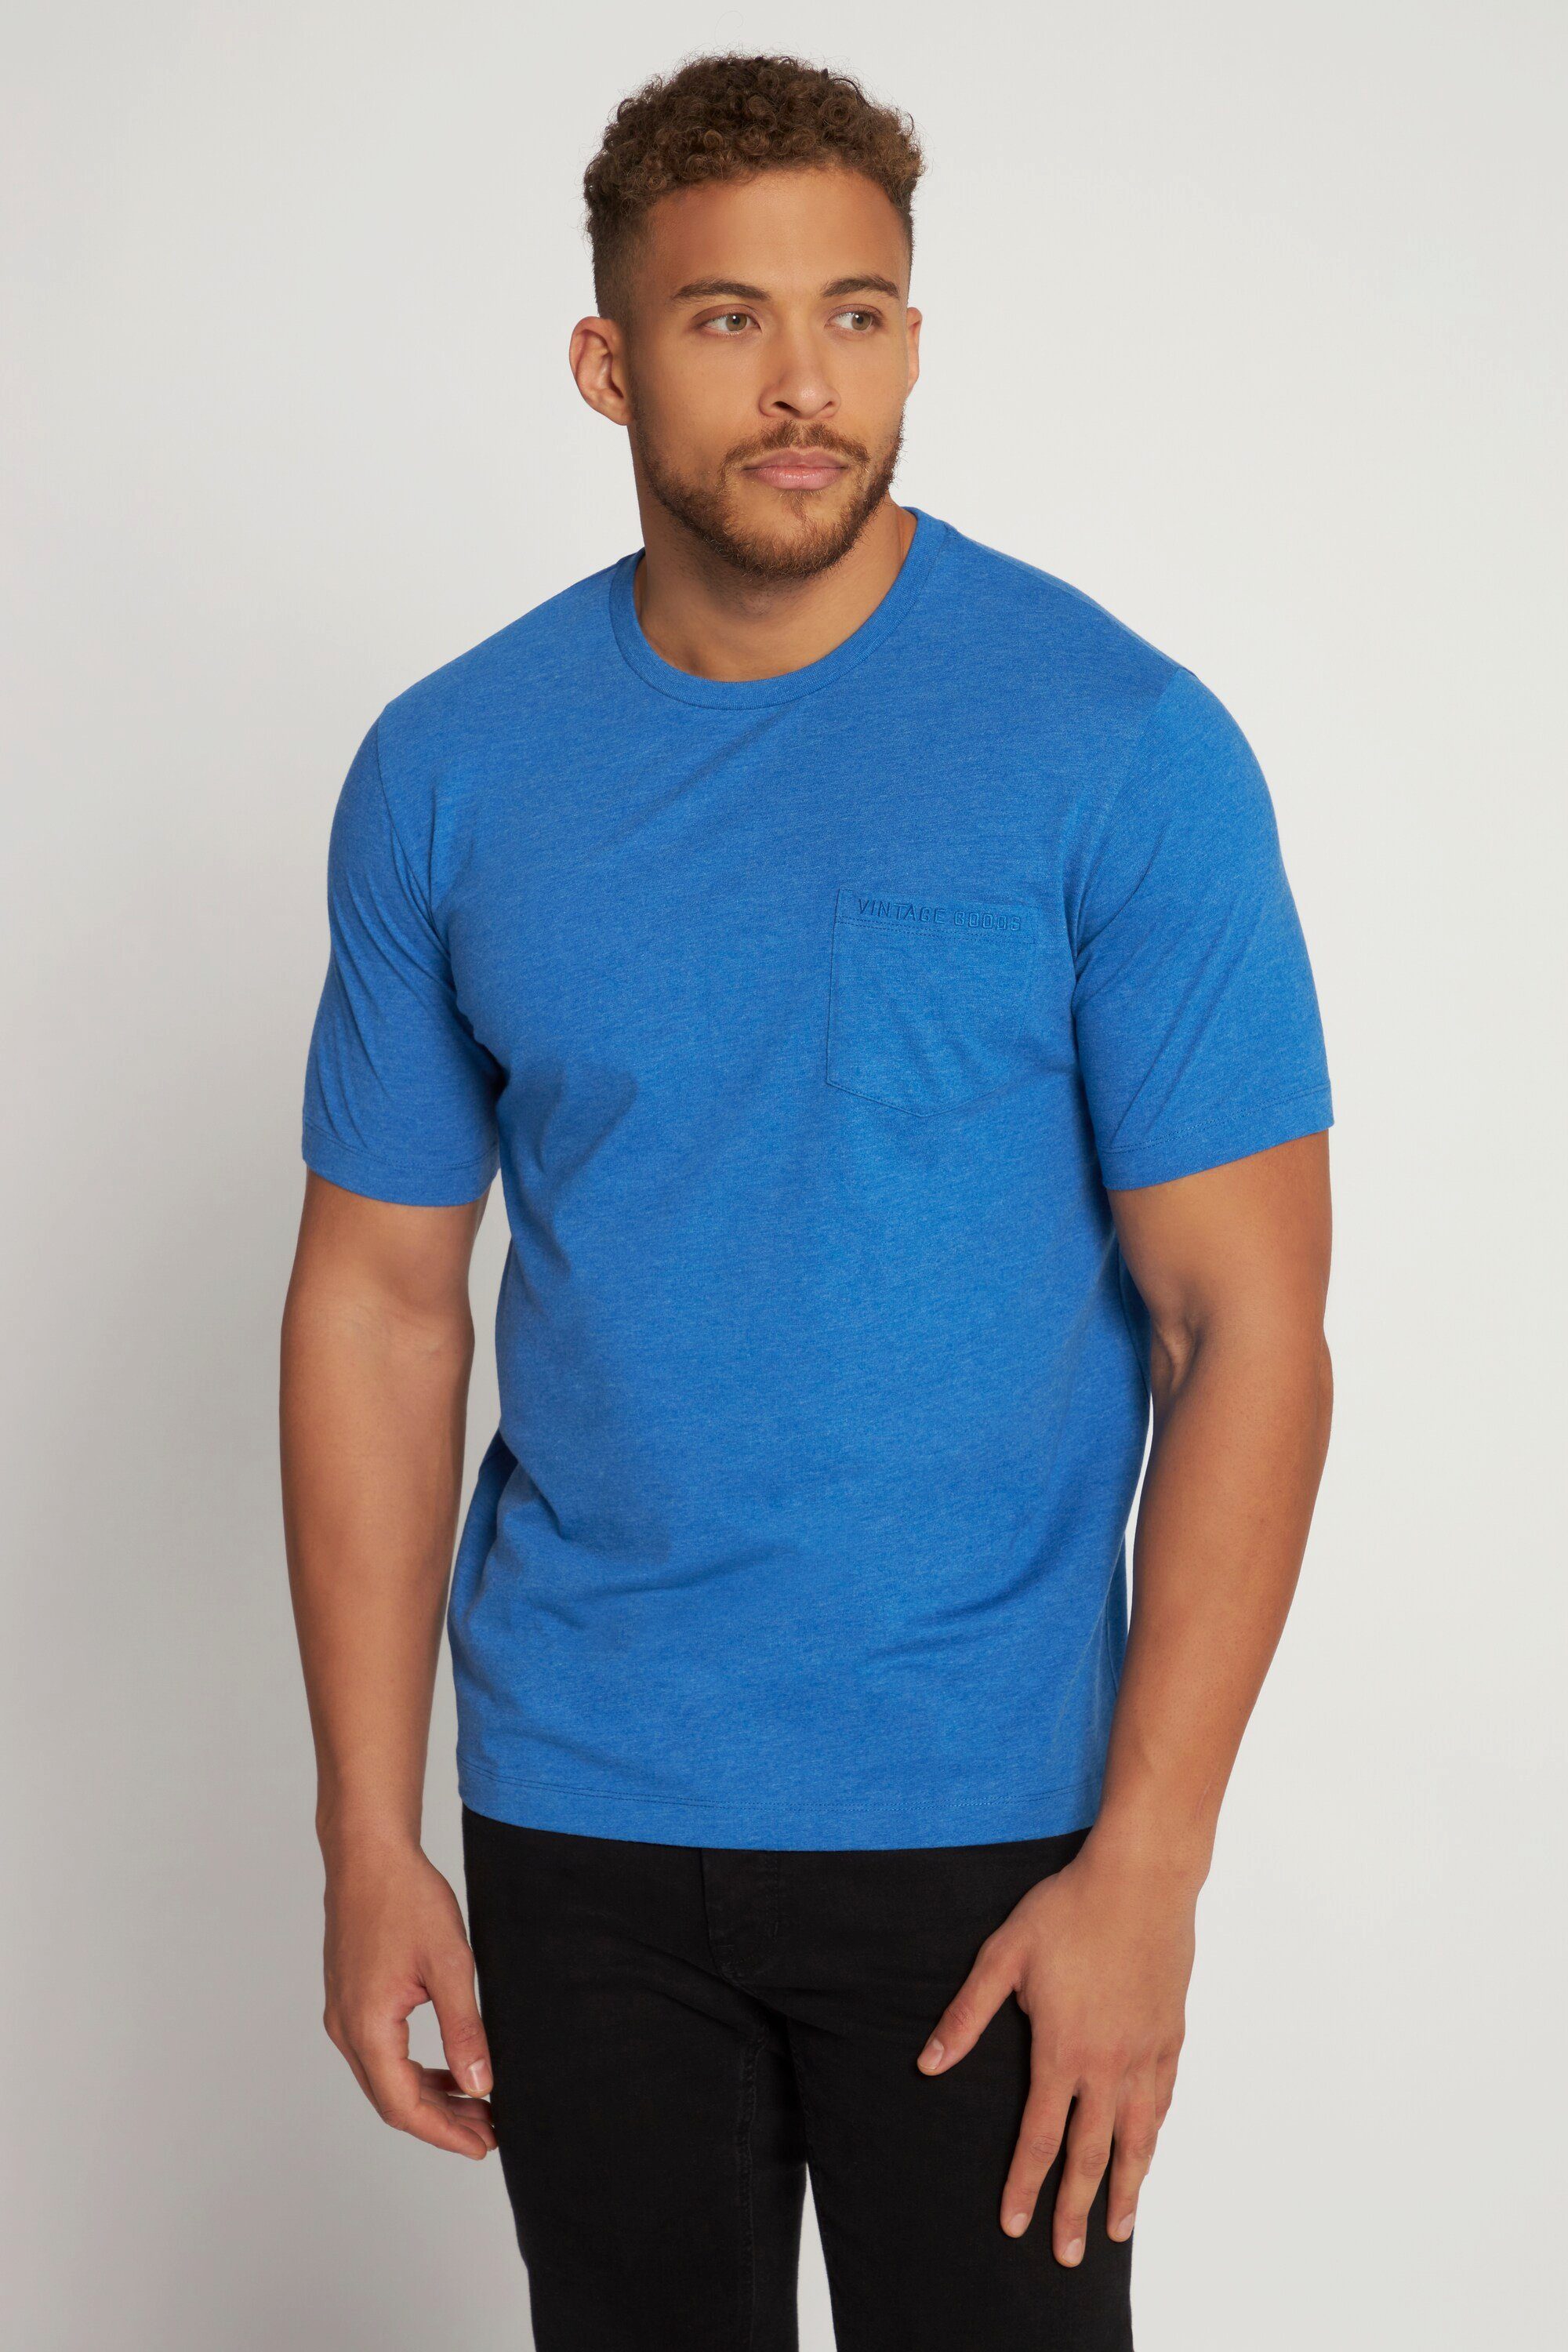 T-Shirt Halbarm T-Shirt Brusttasche bis JP1880 Rundhals 8 XL